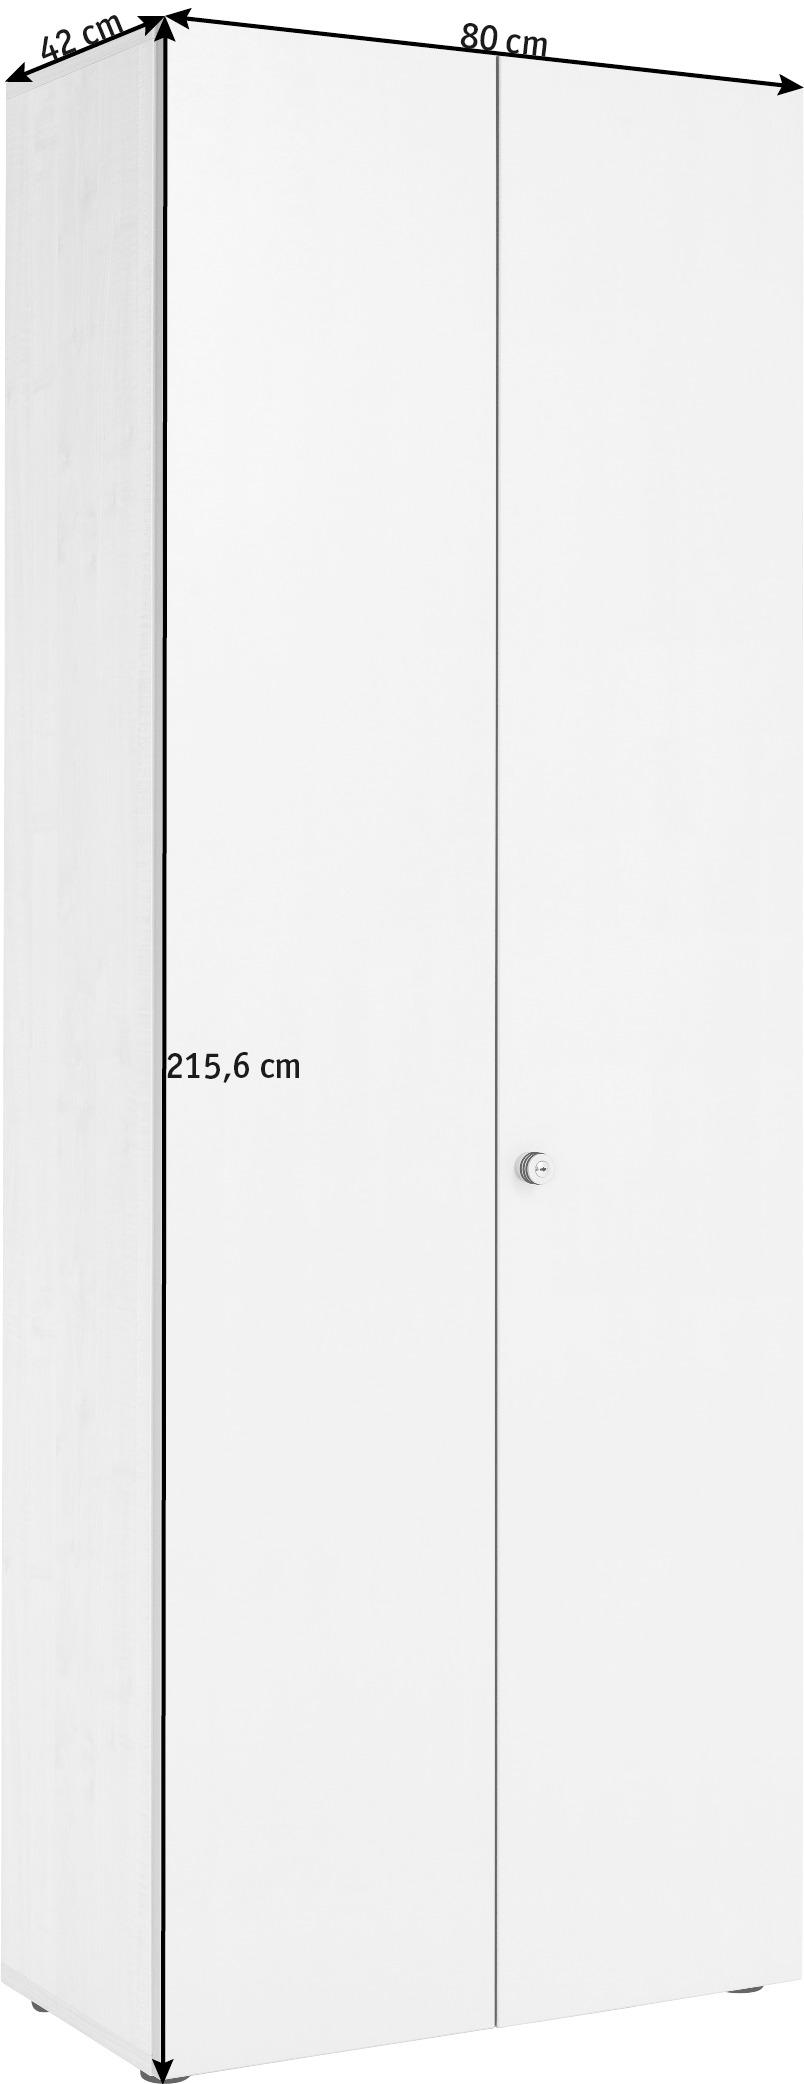 AKTENSCHRANK 80/215,6/42 cm  - Eichefarben/Graphitfarben, KONVENTIONELL, Holzwerkstoff (80/215,6/42cm)